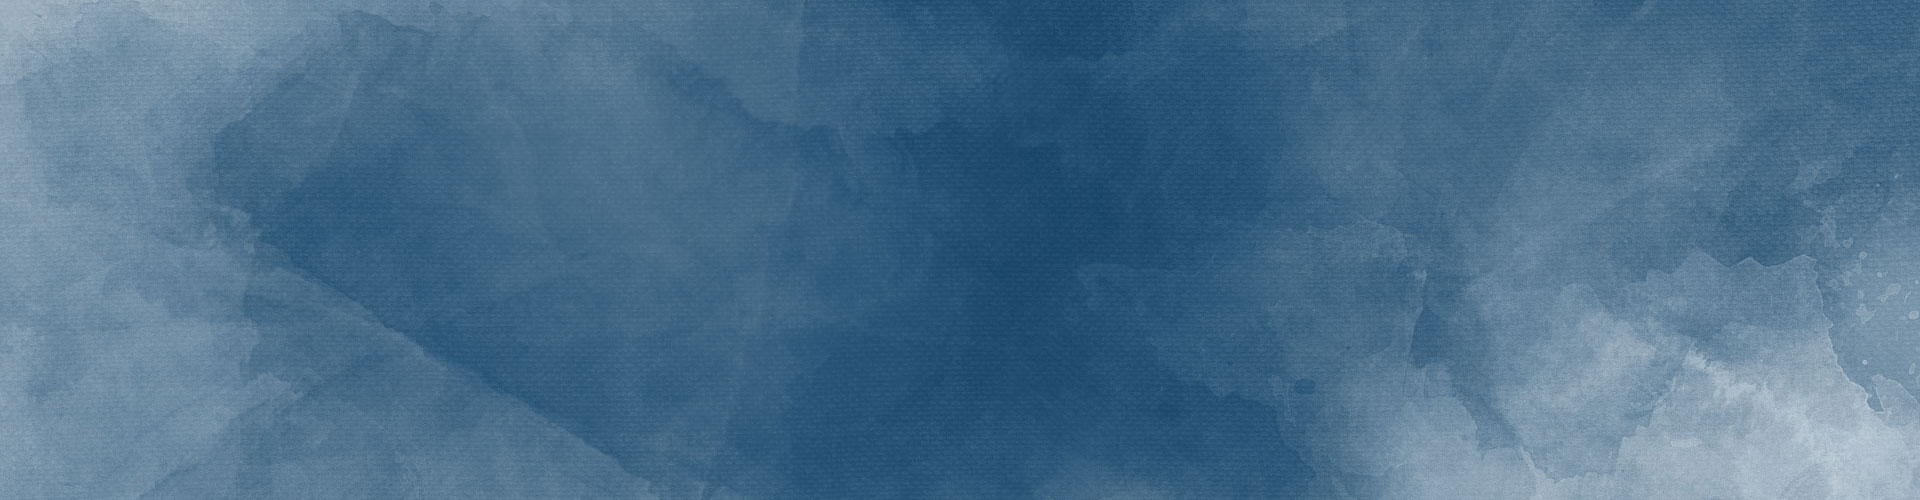 textured blue background